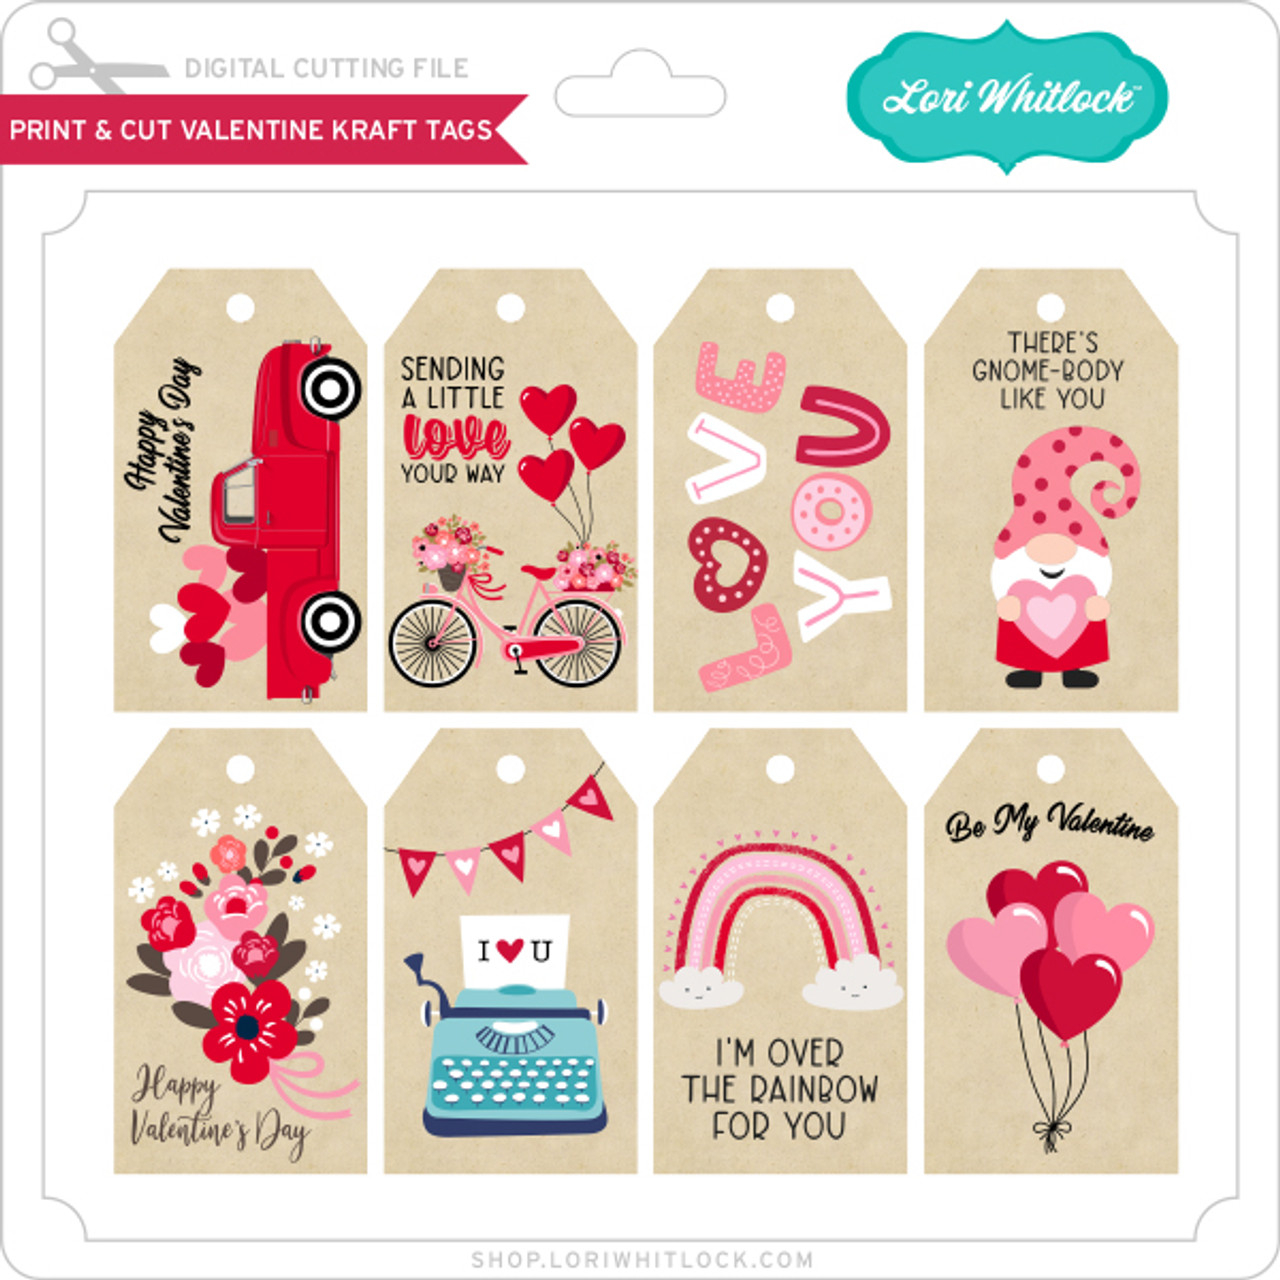 Print & Cut Valentine Kraft Tags - Lori Whitlock's SVG Shop